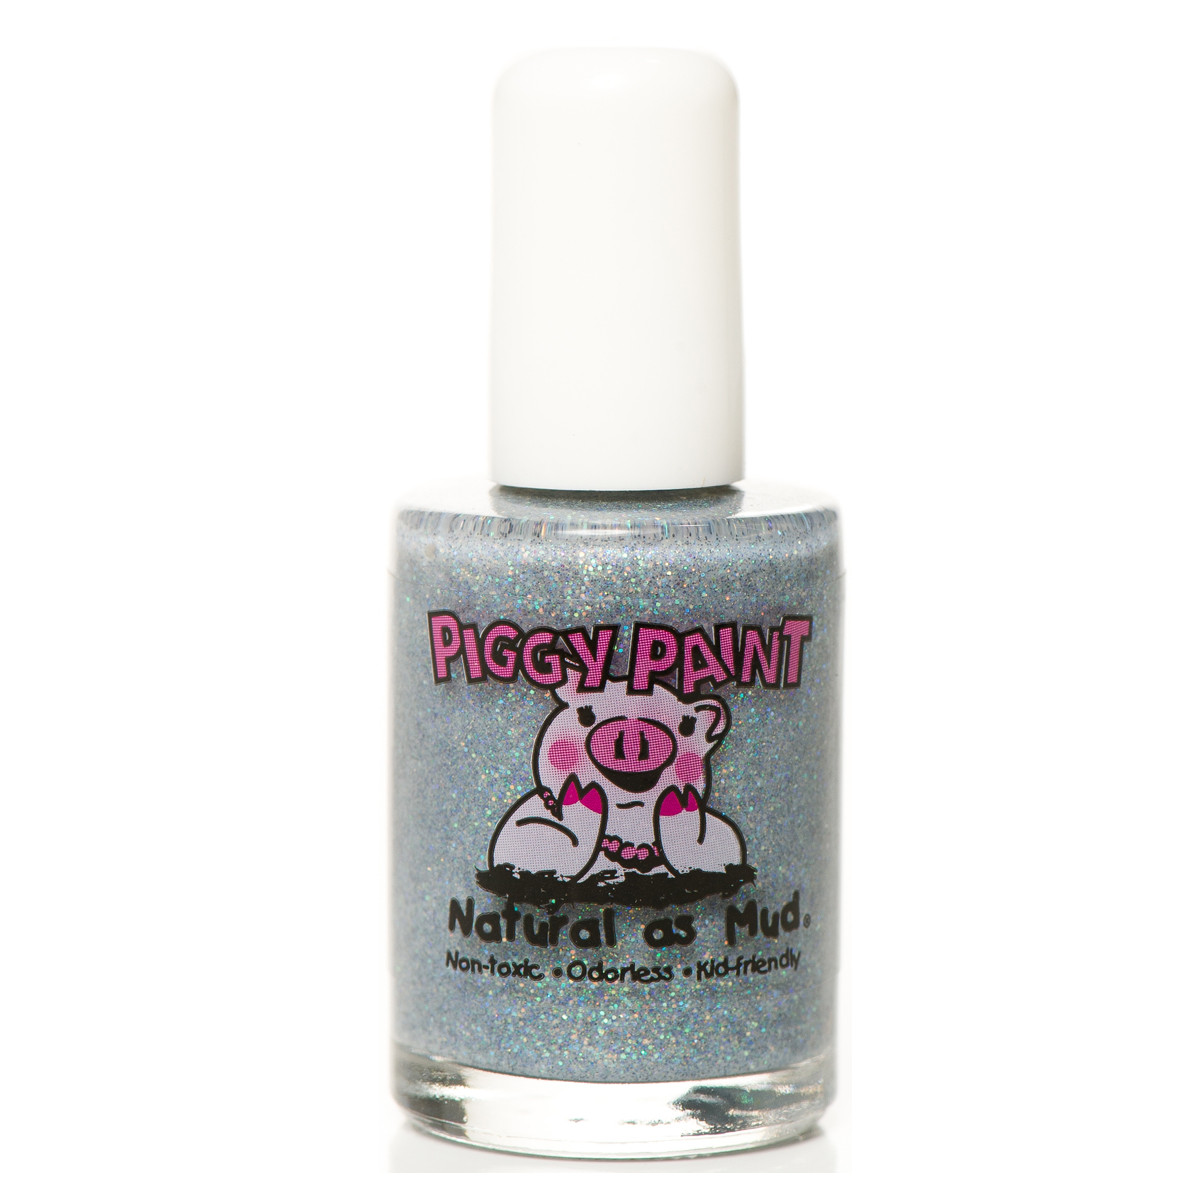 Piggy Paint Nail Polish, Glitter Bug - Parents' Favorite